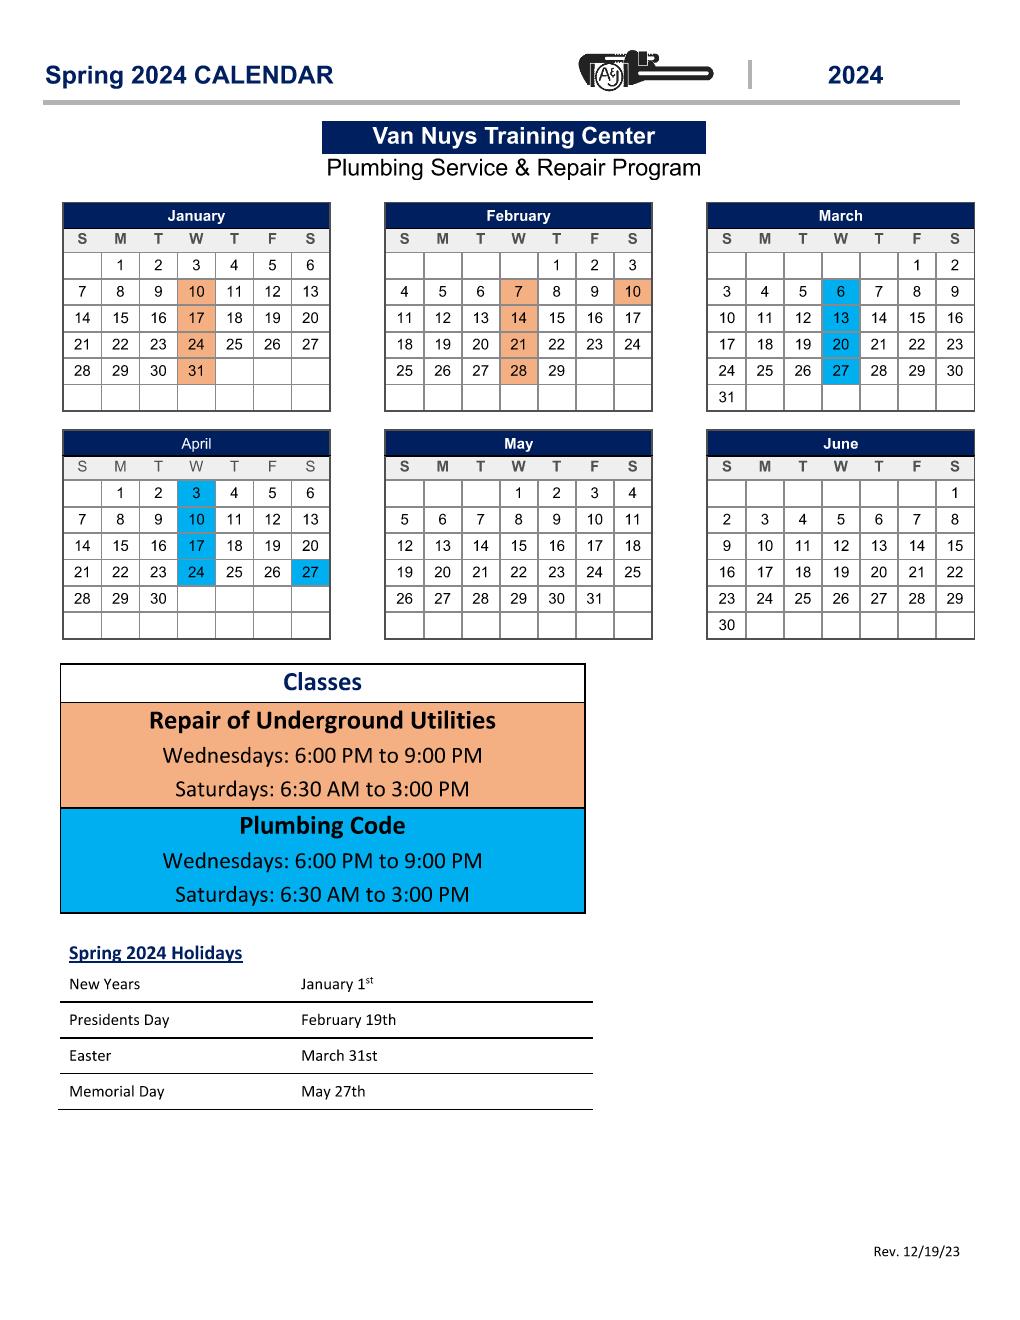 Current Service & Repair Calendar for Van Nuys